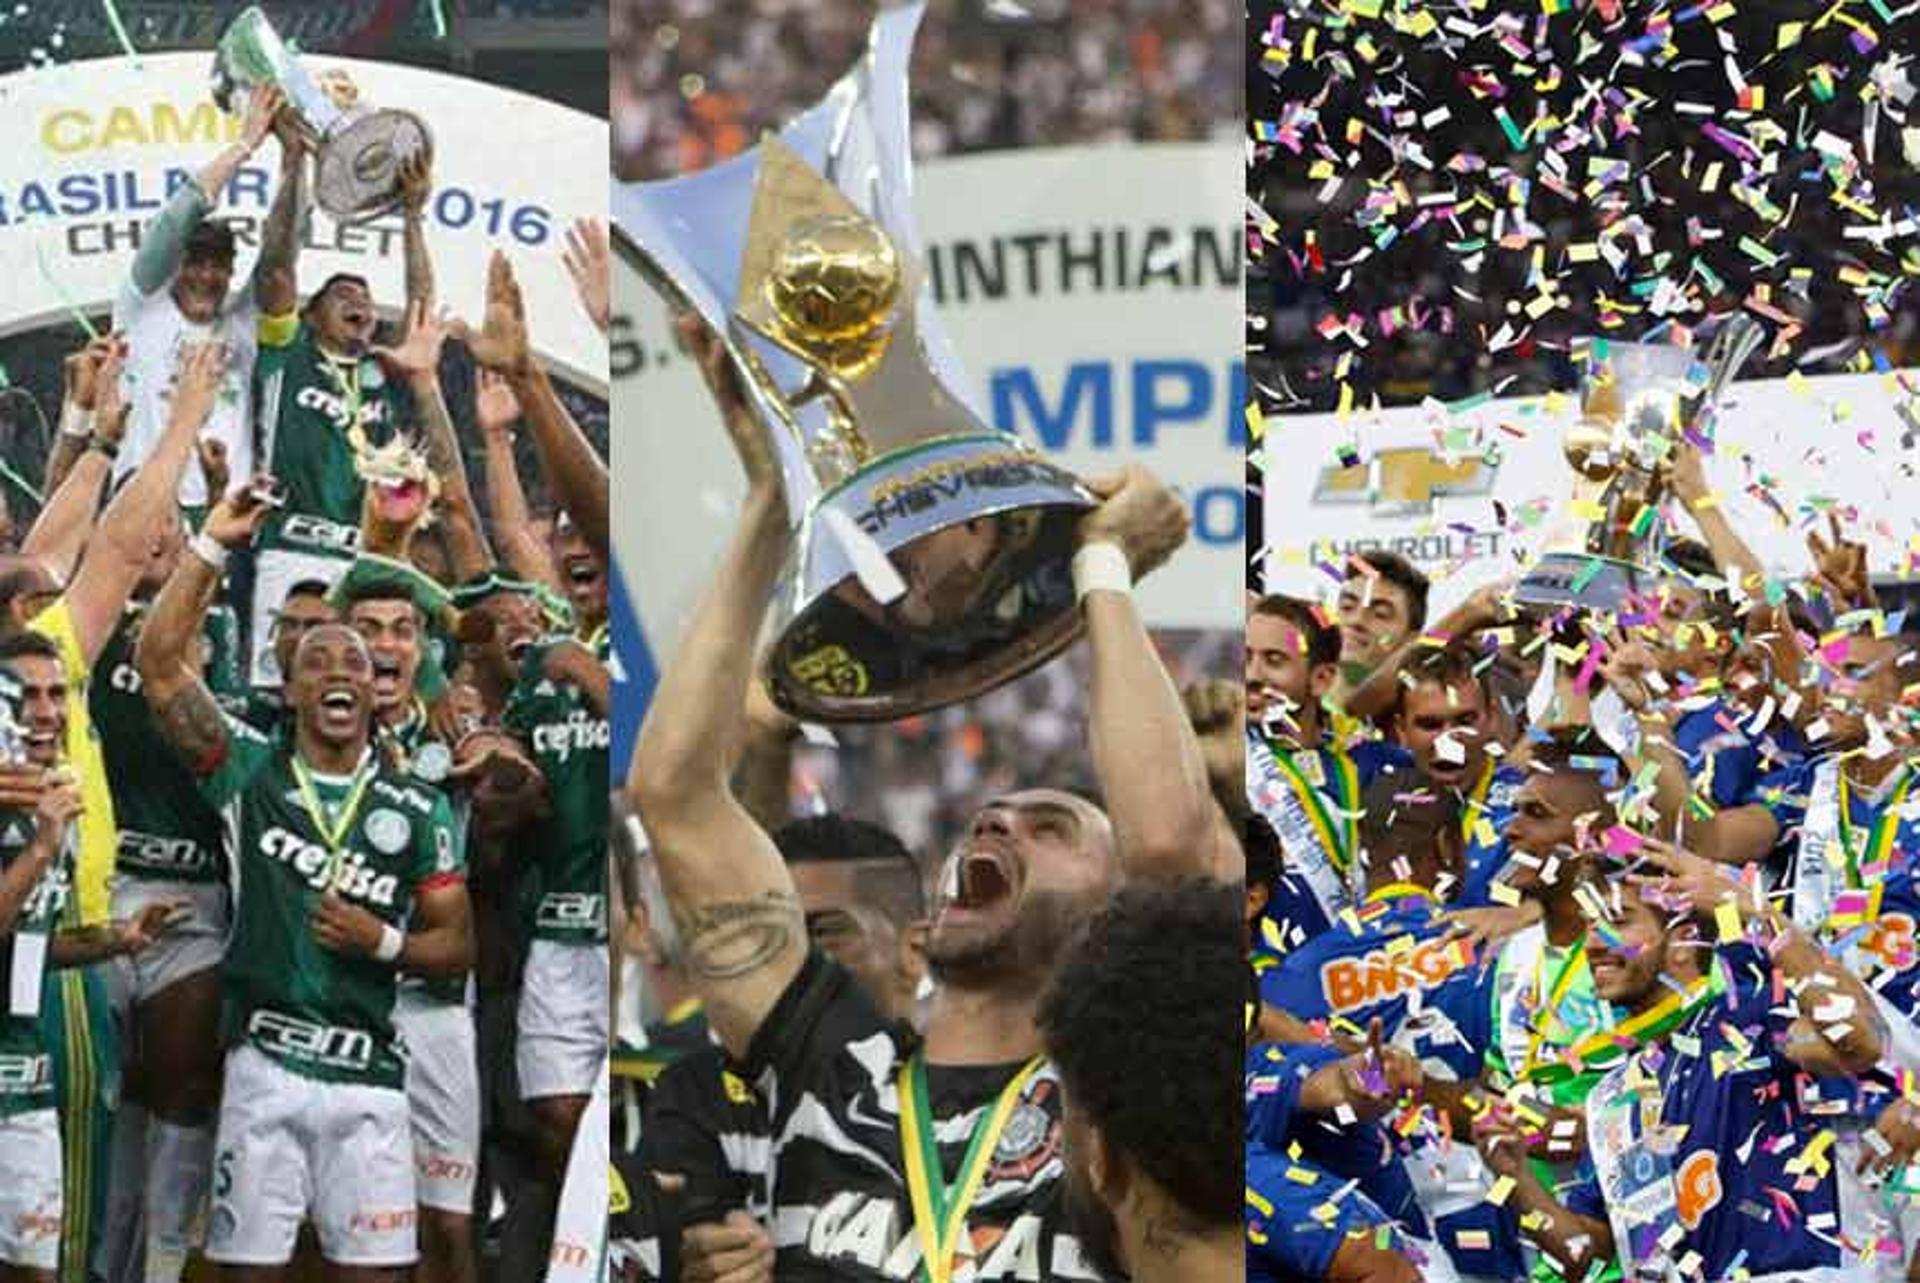 Oito campeões brasileiros (Palmeiras-2016, Corinthians-2015, Cruzeiro-13/14, Fluminense-2010/12 e São Paulo-2006/07) lideravam a competição após 27 rodadas. Confira como estava o G6 ano a ano antes da 28ª rodada desde 2006 (Brasileirão com 20 clubes)...